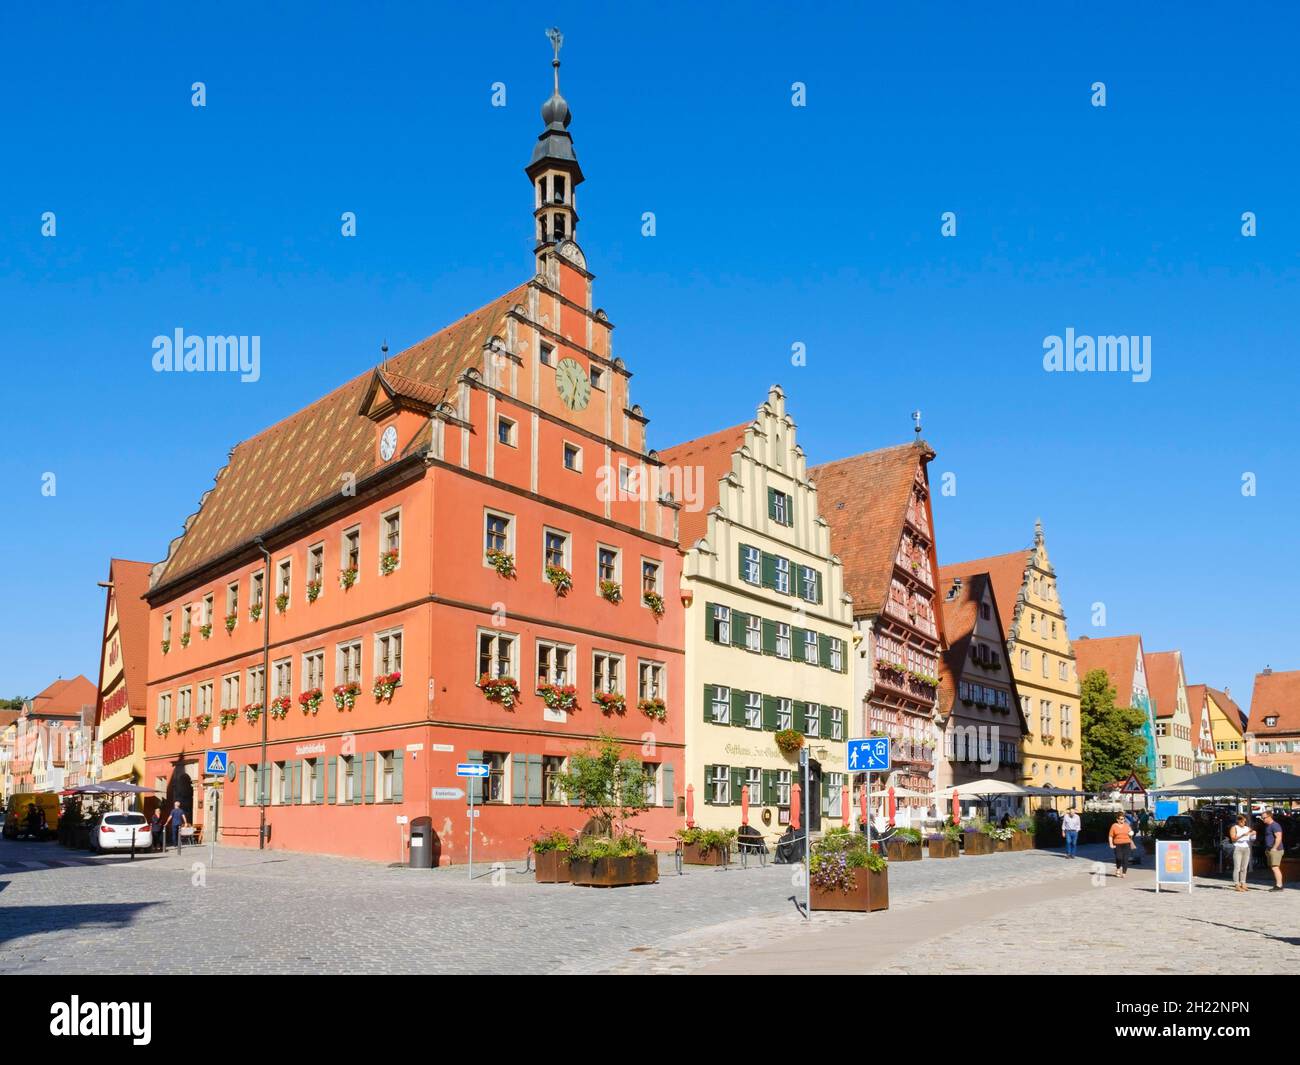 Maisons à pignons au marché du vin dans la vieille ville historique, Dinkelsbuehl, moyenne-Franconie, Bavière, Allemagne Banque D'Images